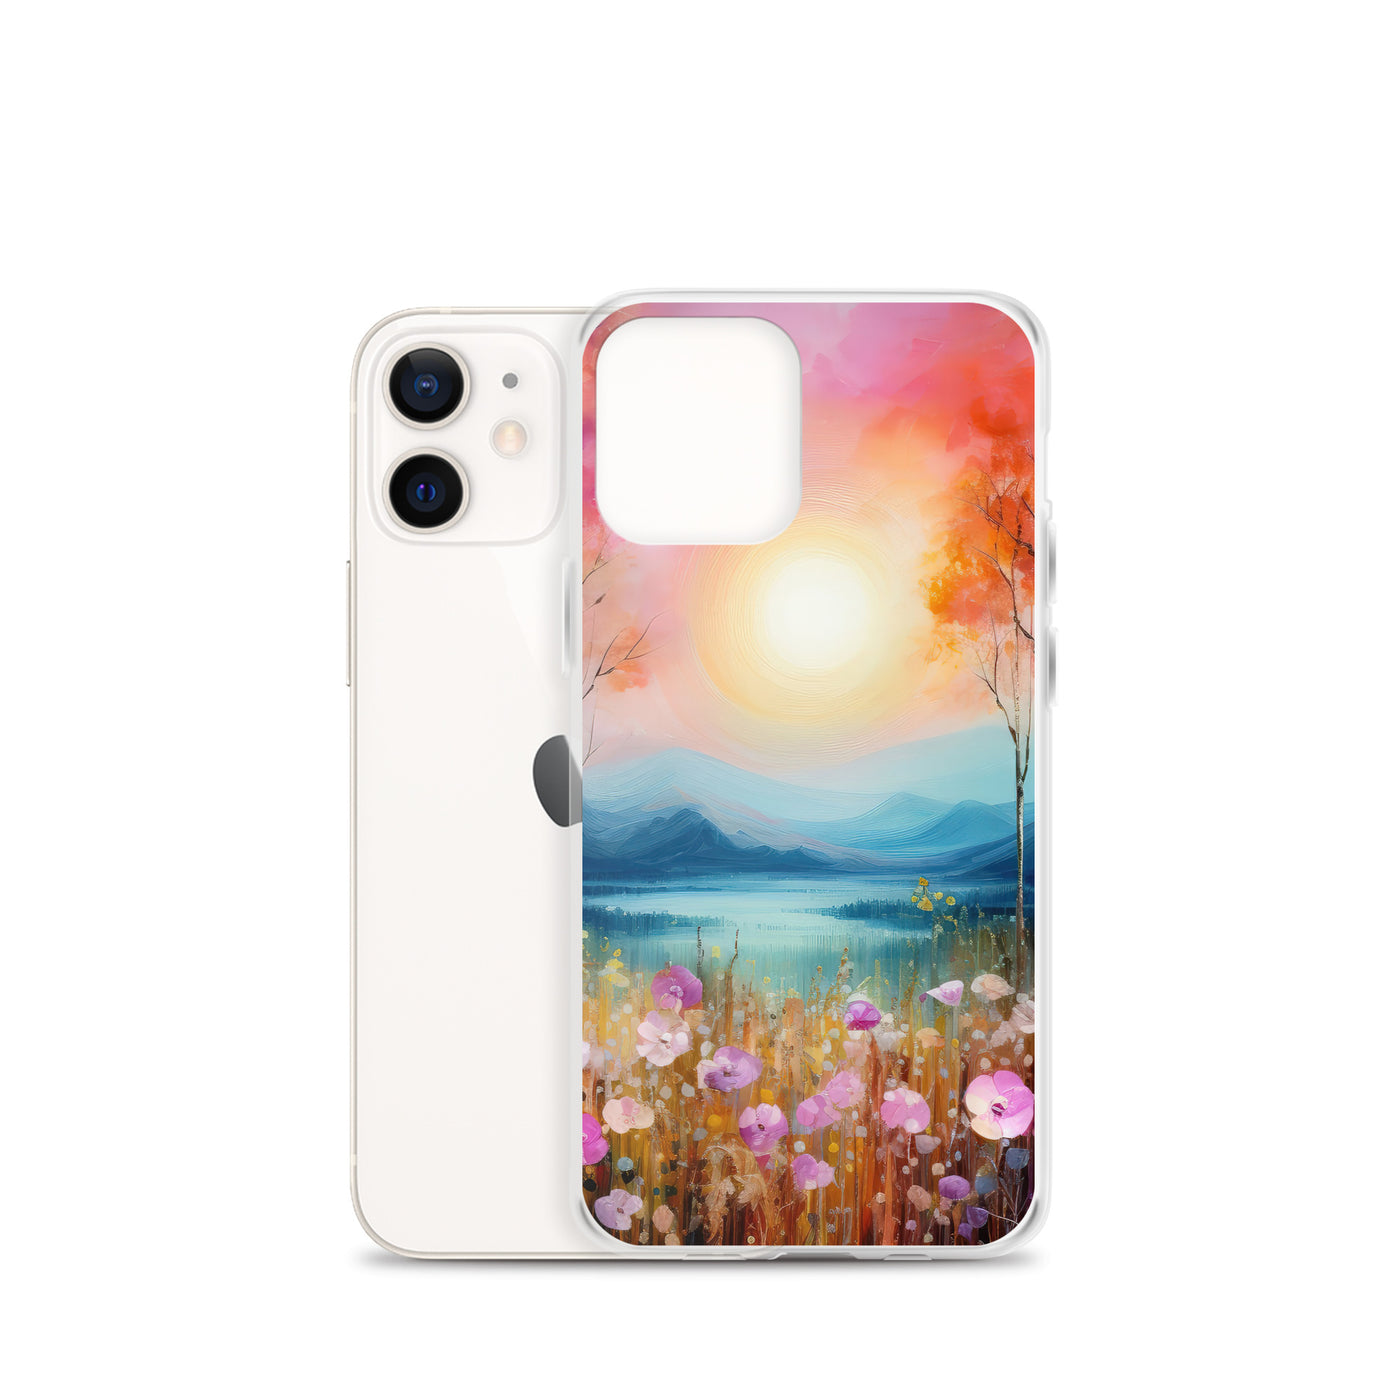 Berge, See, pinke Bäume und Blumen - Malerei - iPhone Schutzhülle (durchsichtig) berge xxx